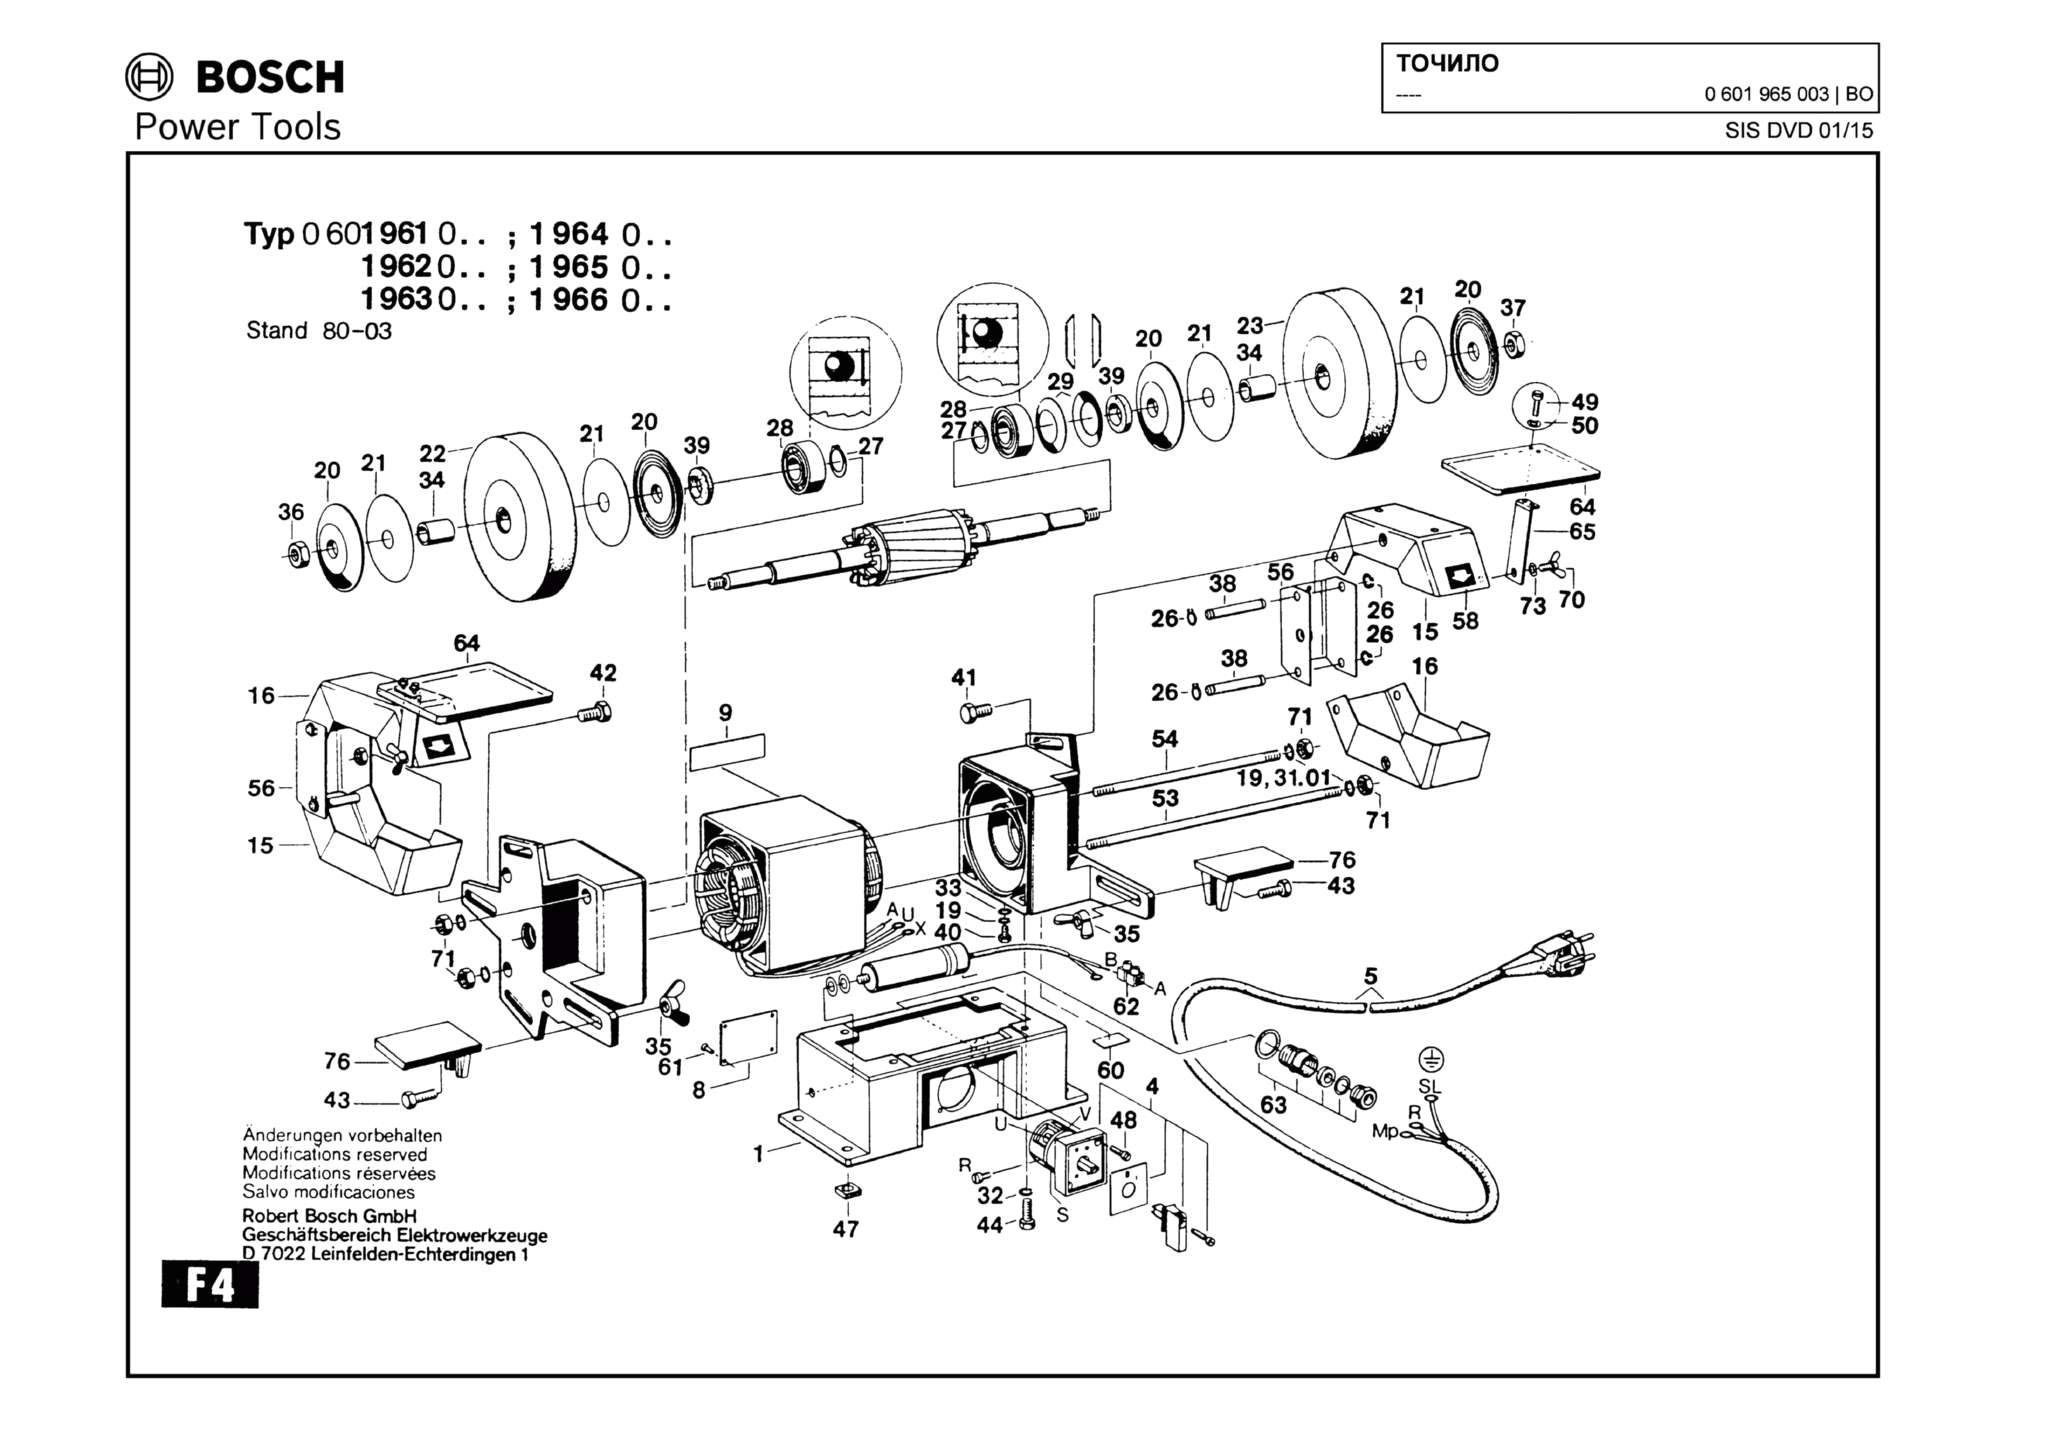 Запчасти, схема и деталировка Bosch (ТИП 0601965003)